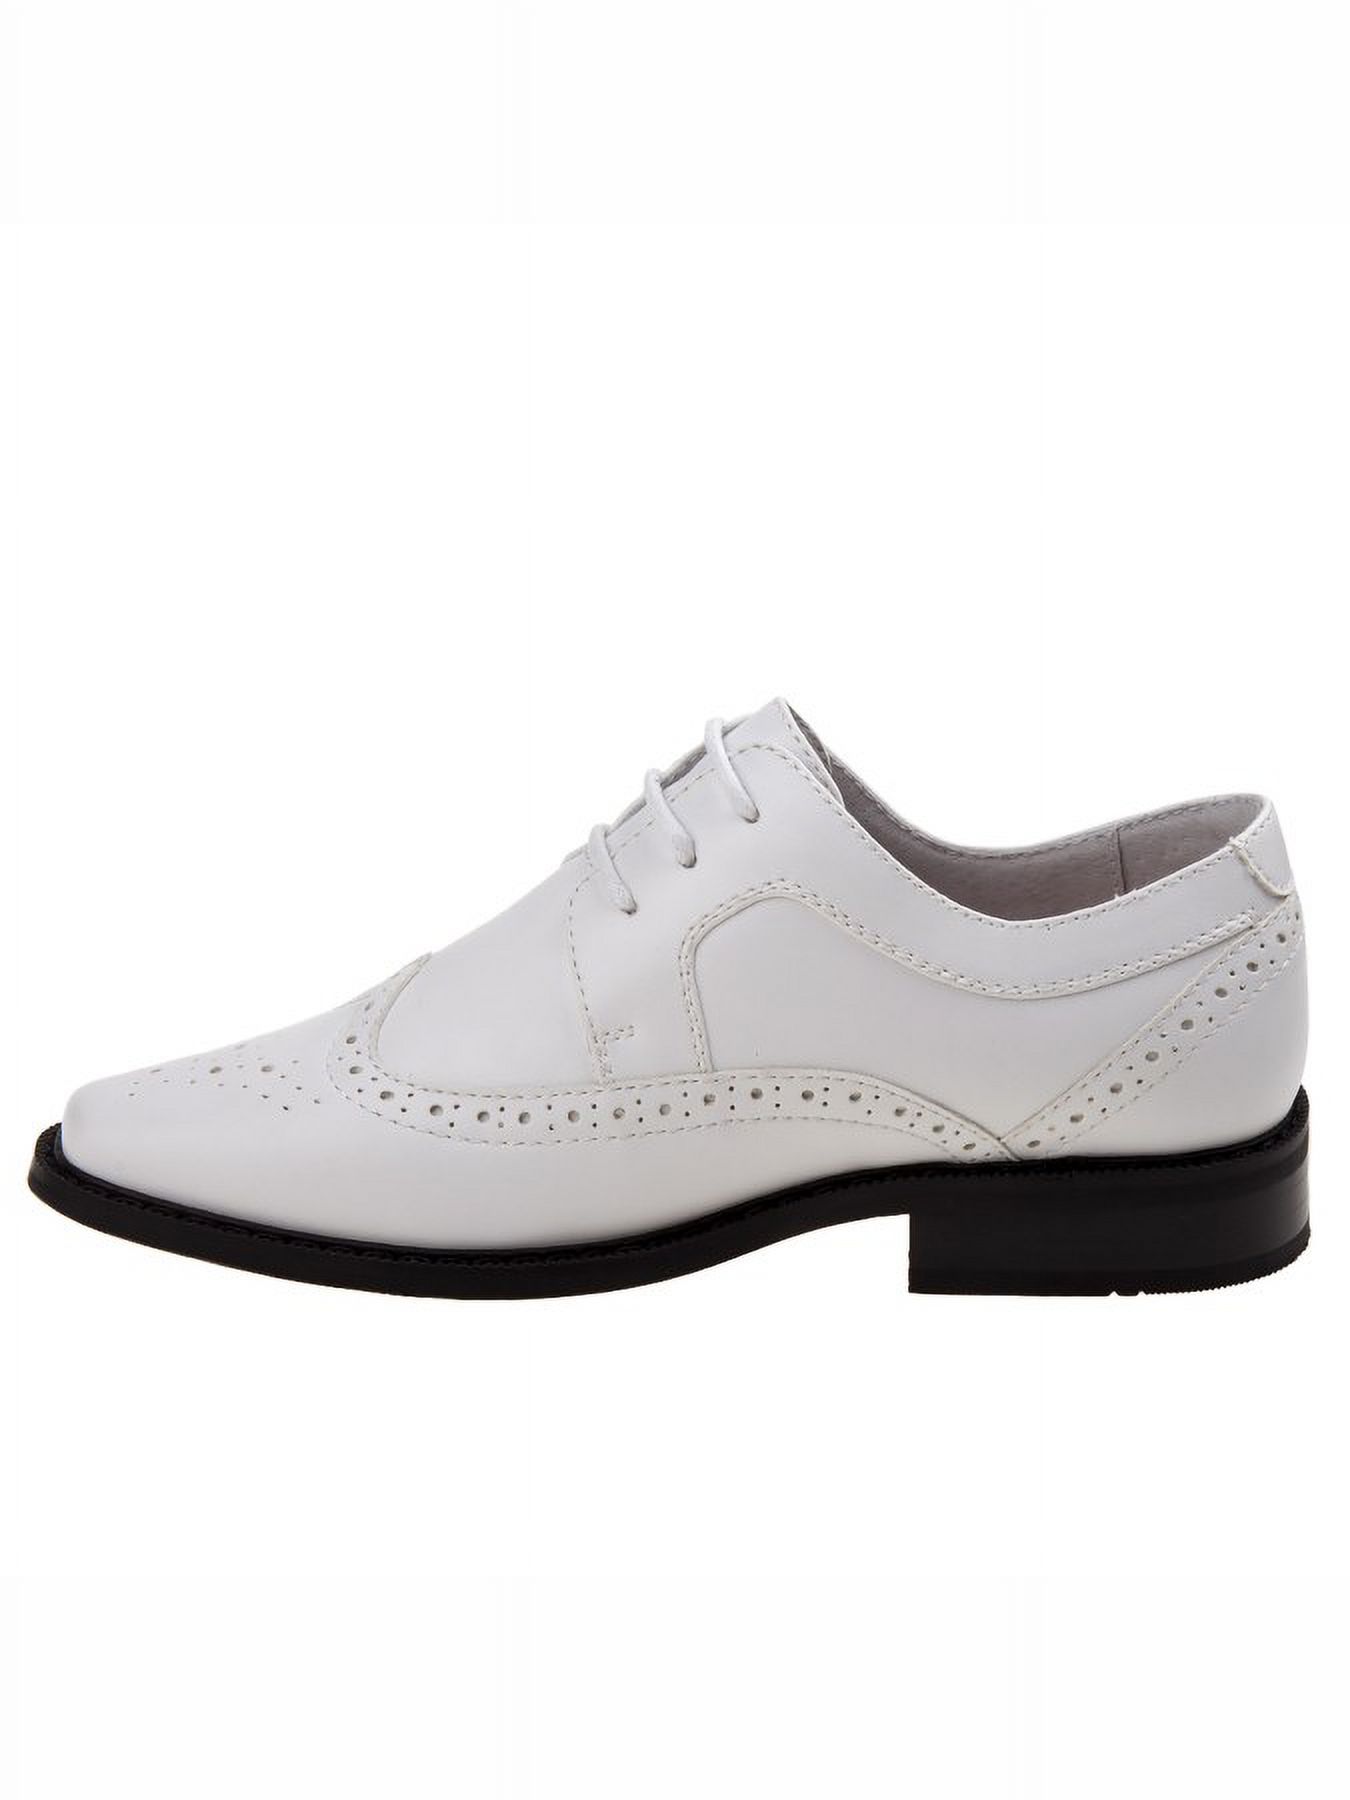 Joseph Allen Boys Lace Child Dress Shoes - White, 13 - image 3 of 5